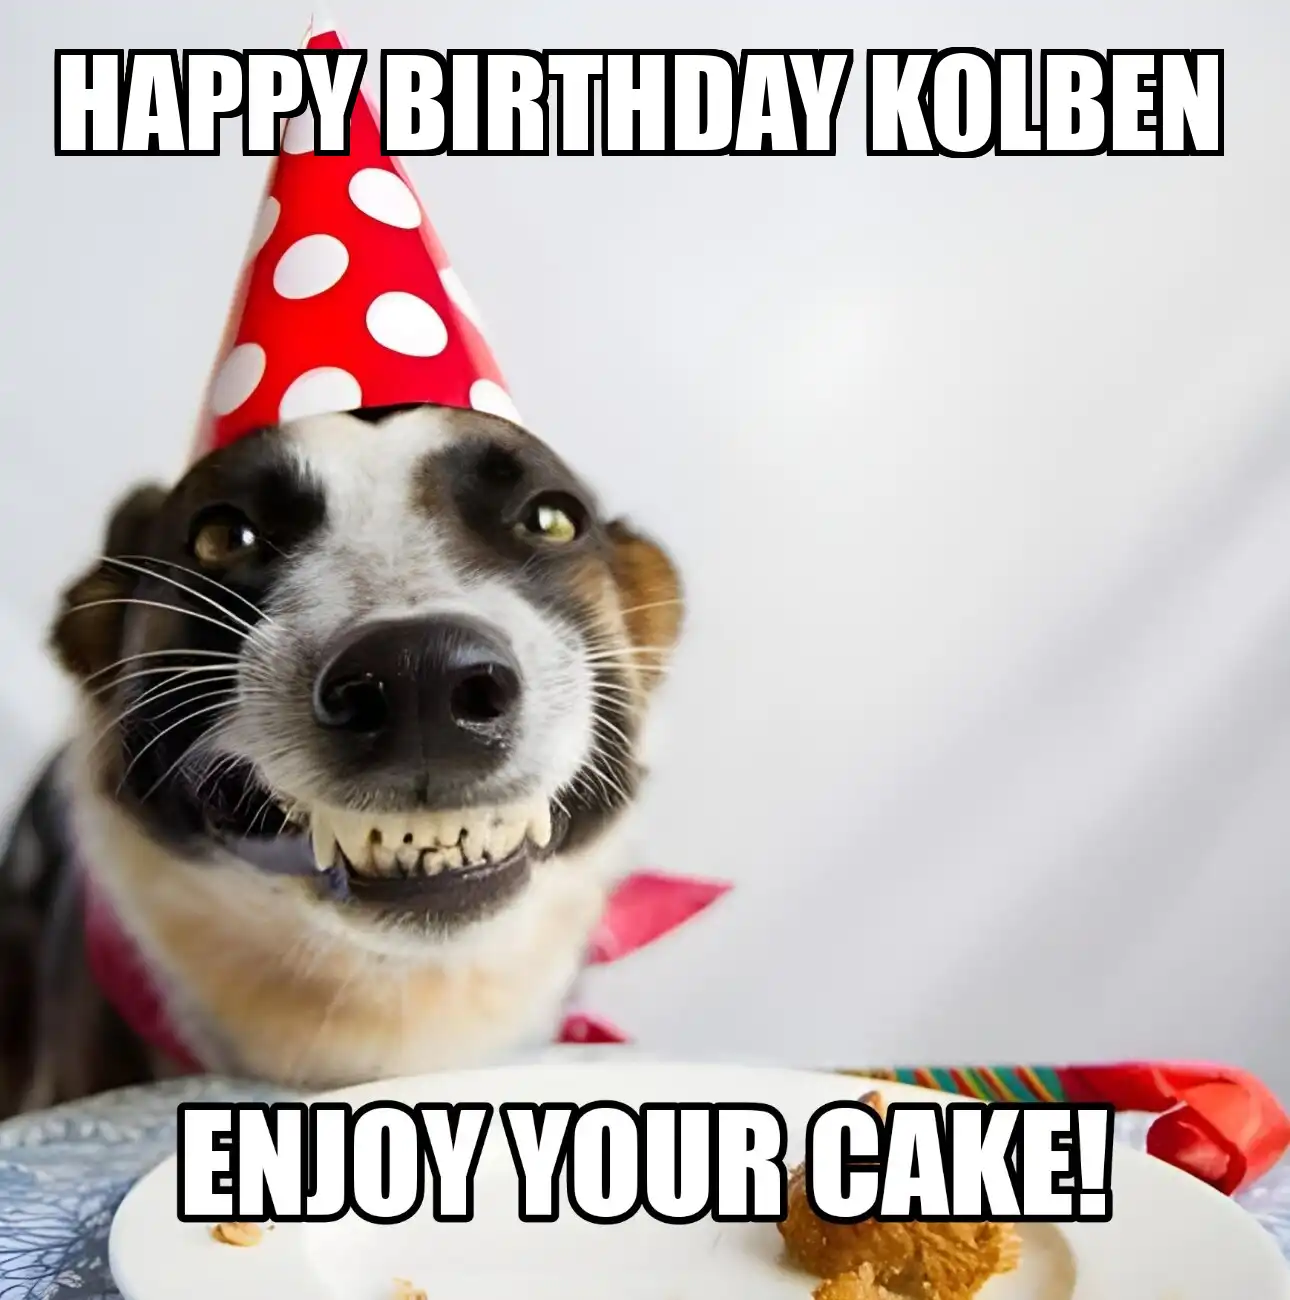 Happy Birthday Kolben Enjoy Your Cake Dog Meme